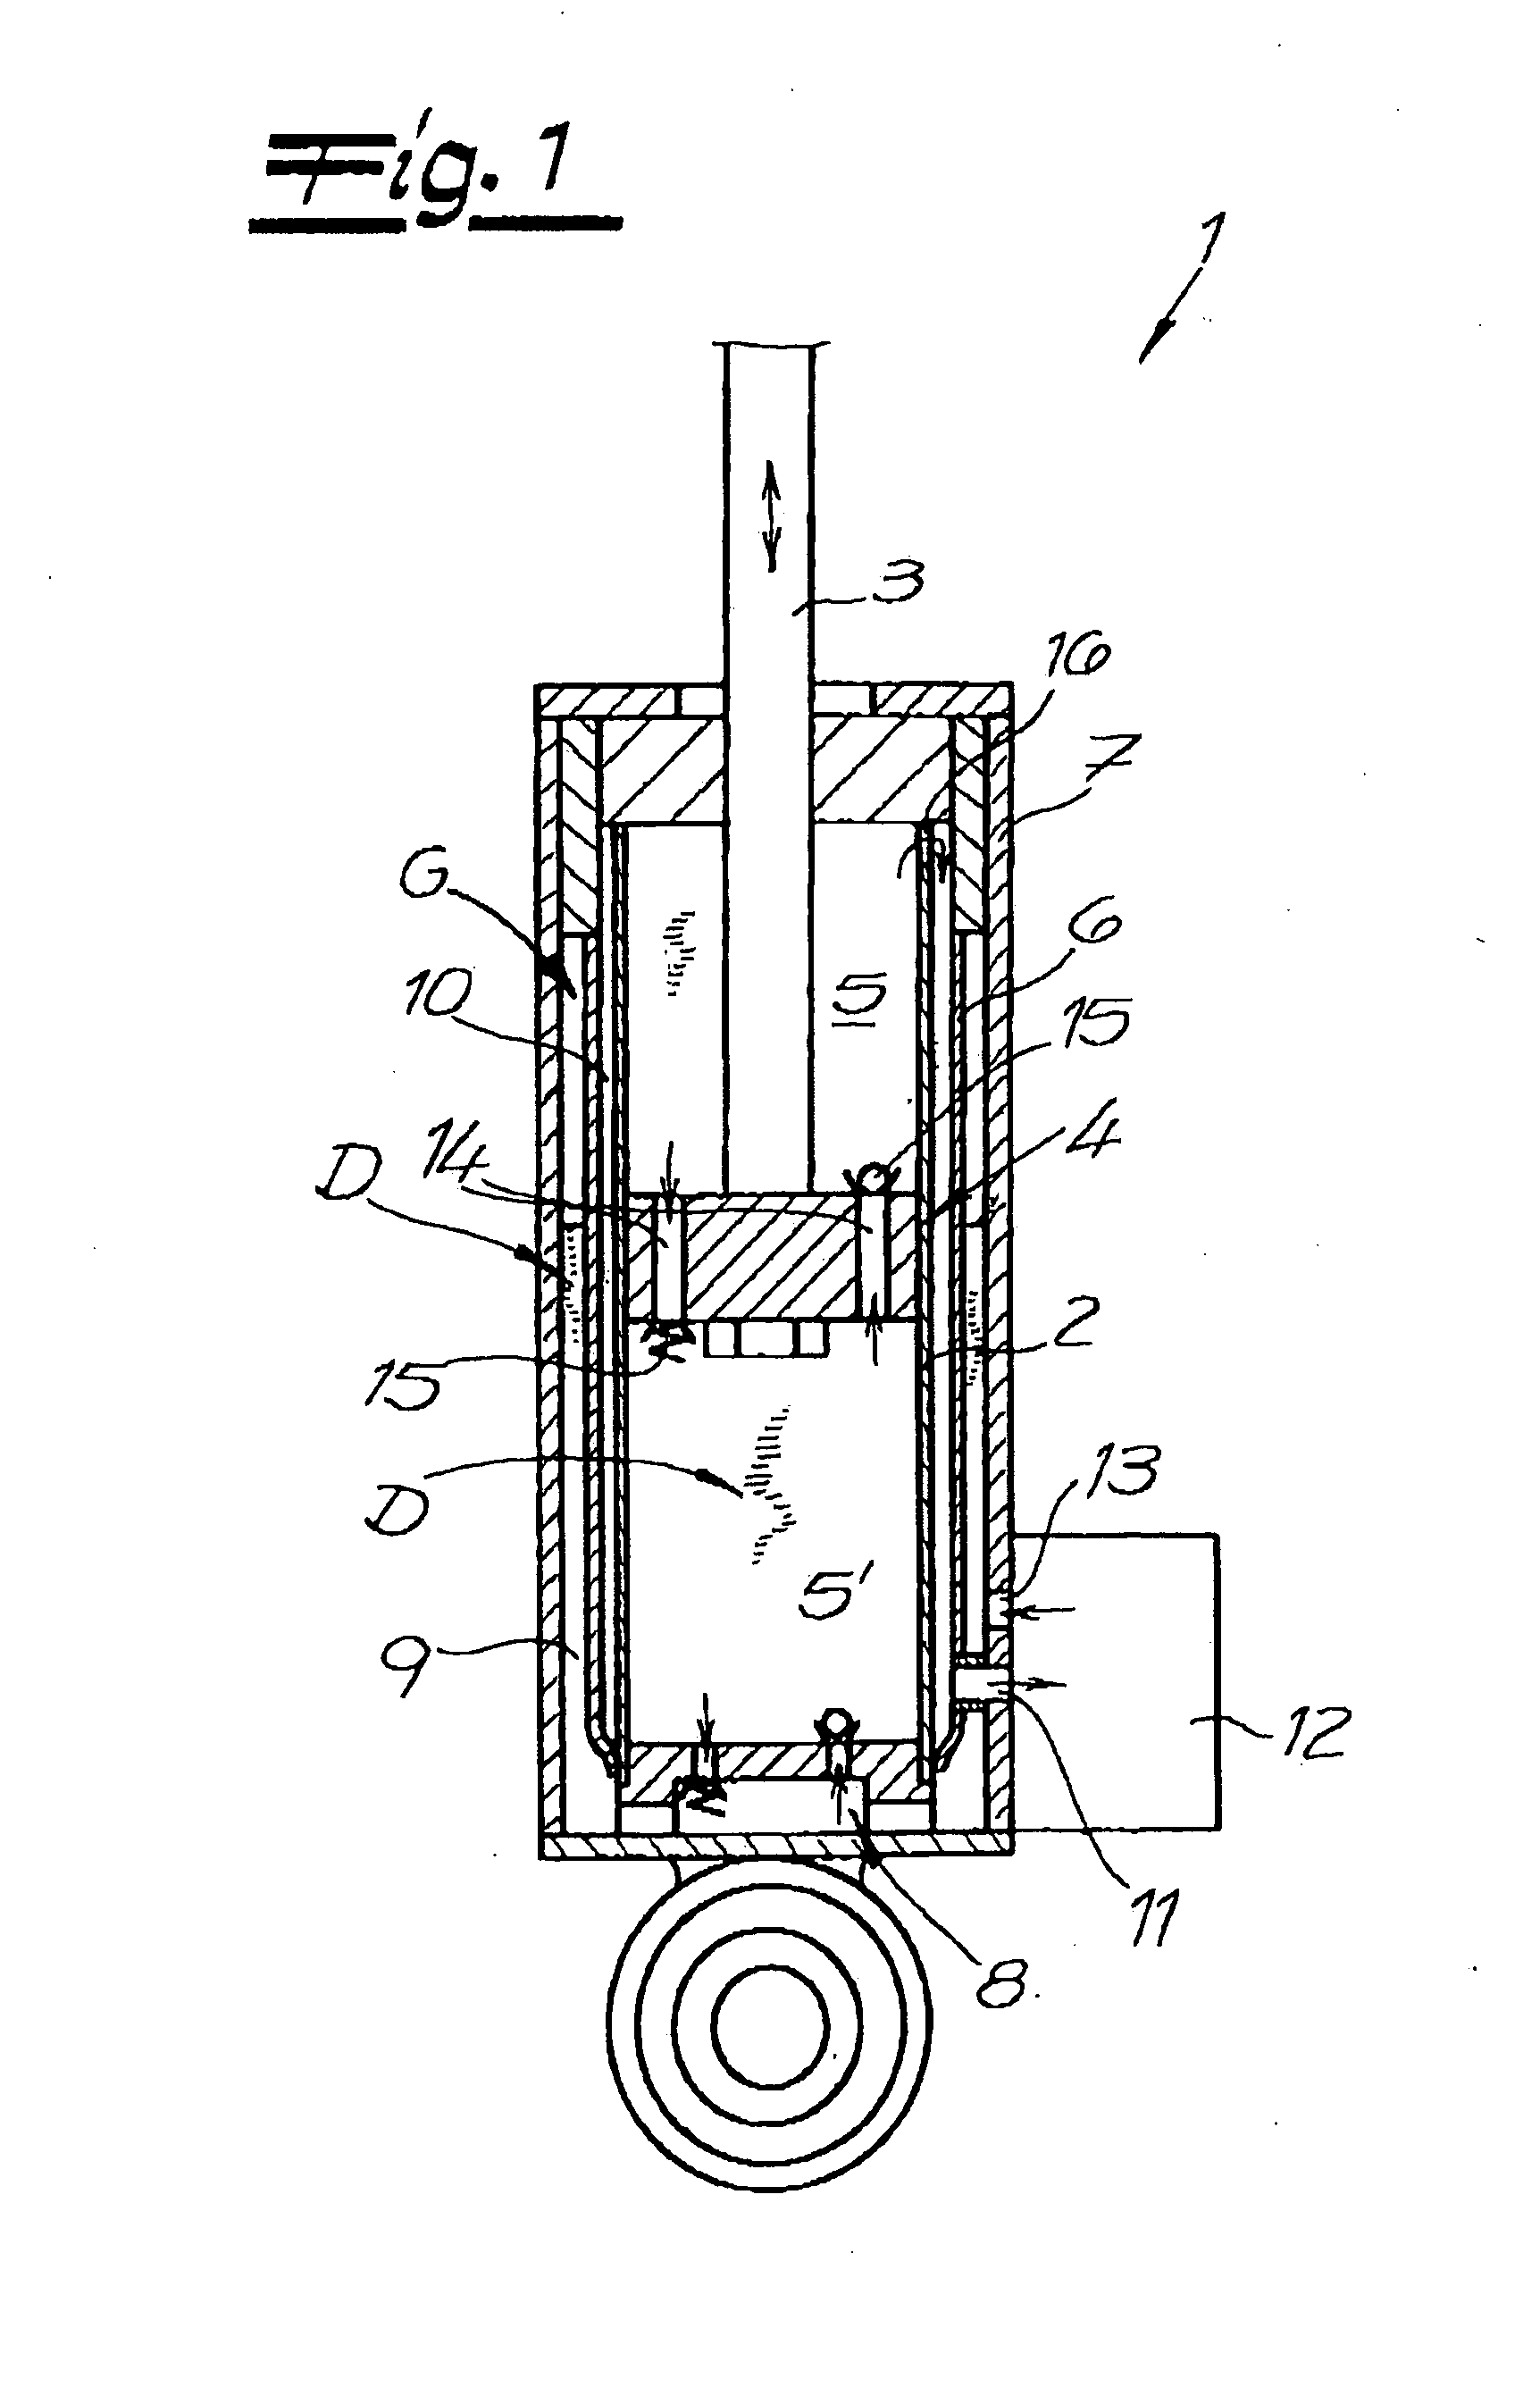 Hydraulic vibration damper